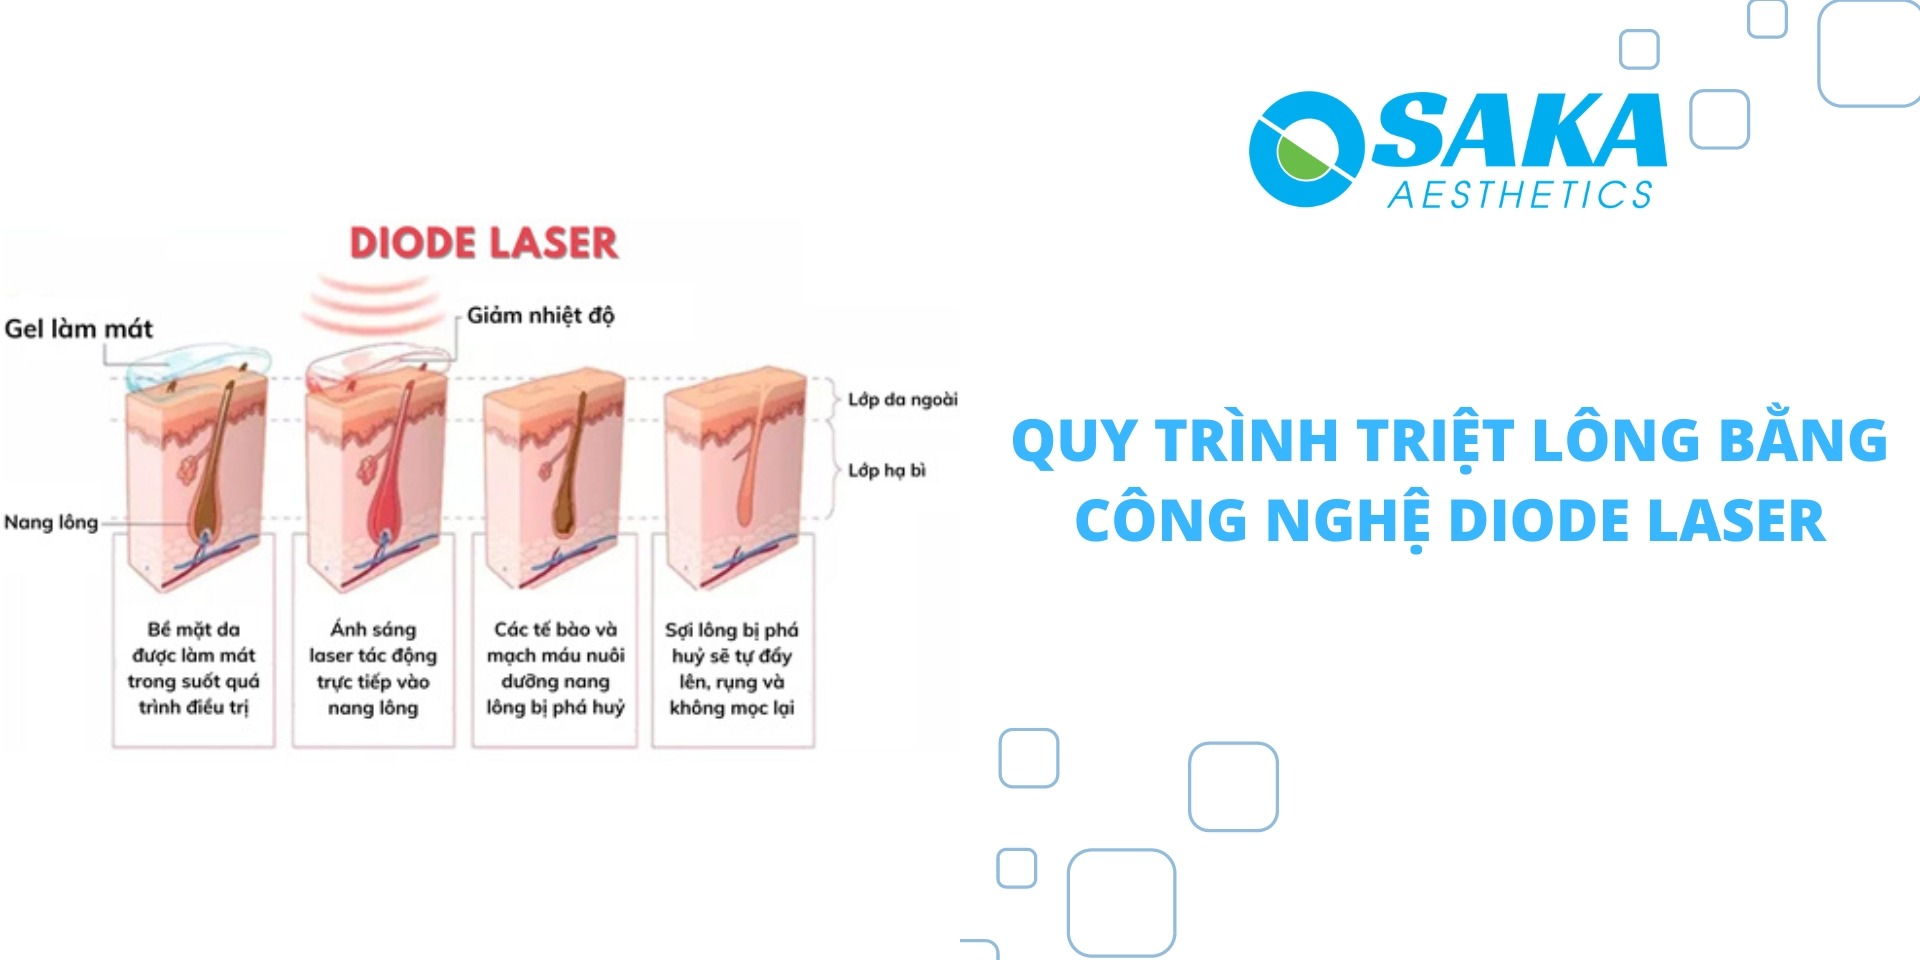 Quy trình triệt lông bằng công nghệ Diode laser